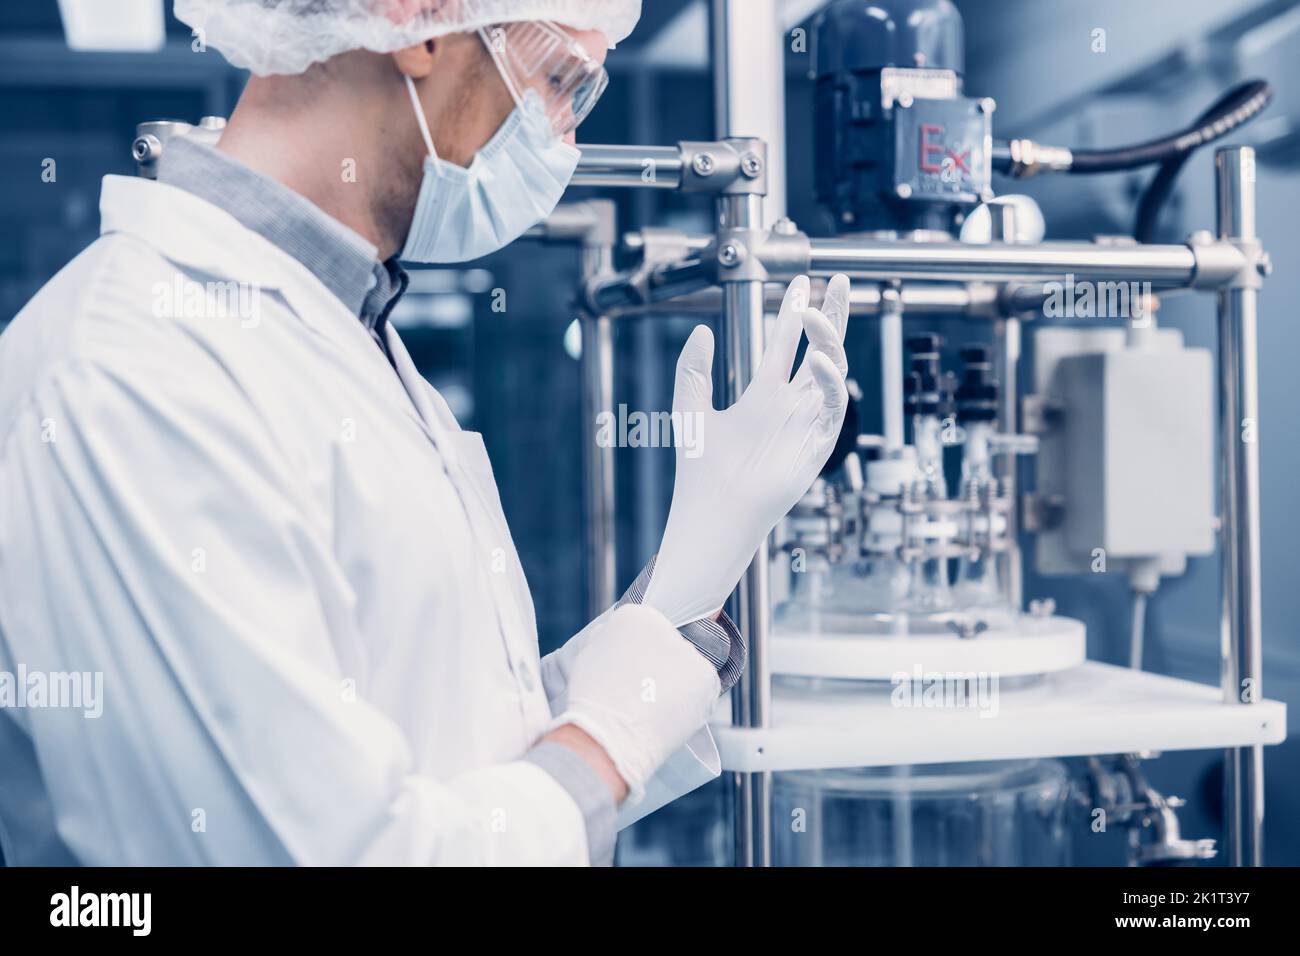 Laboratoire scientifique personnel médical de l'usine travail sécurité porter des gants en caoutchouc travail avec danger chimique dans les usines de laboratoire processus Banque D'Images